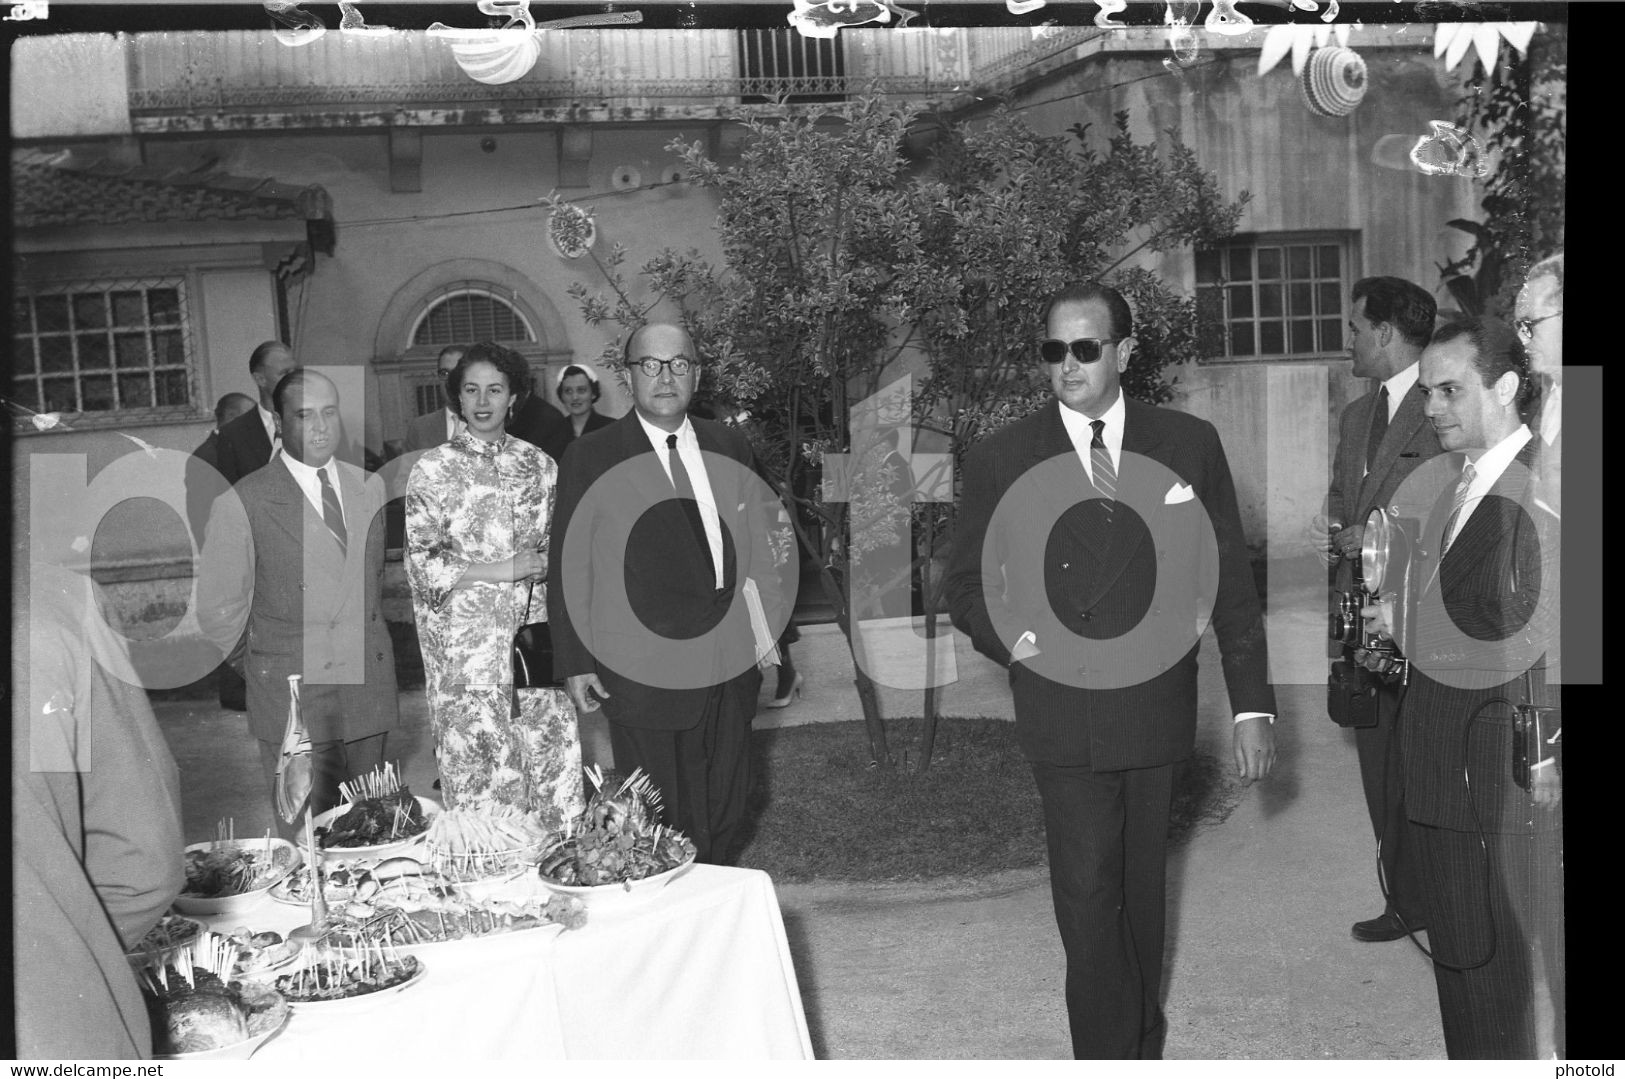 DEUTSCHE LUFTHANSA PARTY  OCTOBER 1957 LISBON PORTUGAL SET ORIGINAL 60mm NEGATIVE NOT PHOTO FOTO PLANE LCAS196 - Non Classés